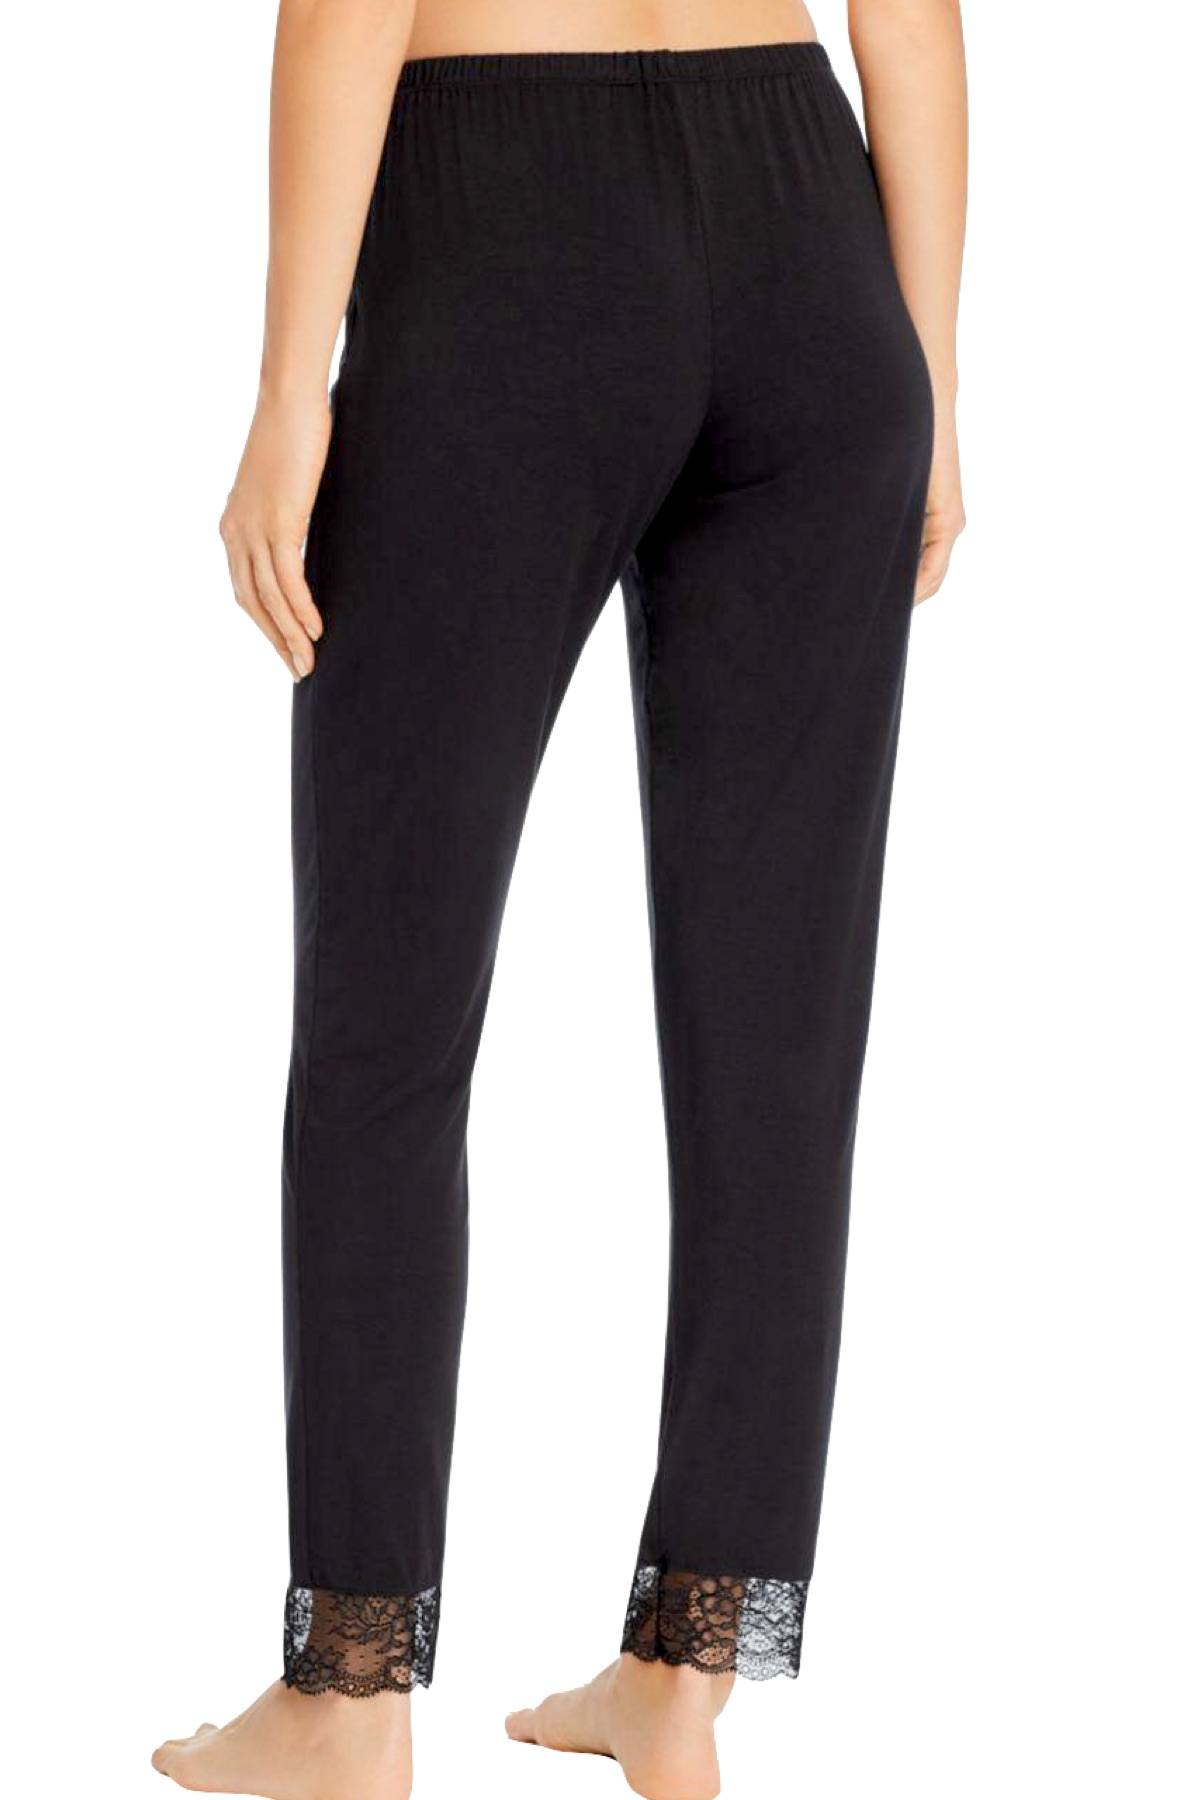 Eberjey Black Vika Classic Lace Slim Pant